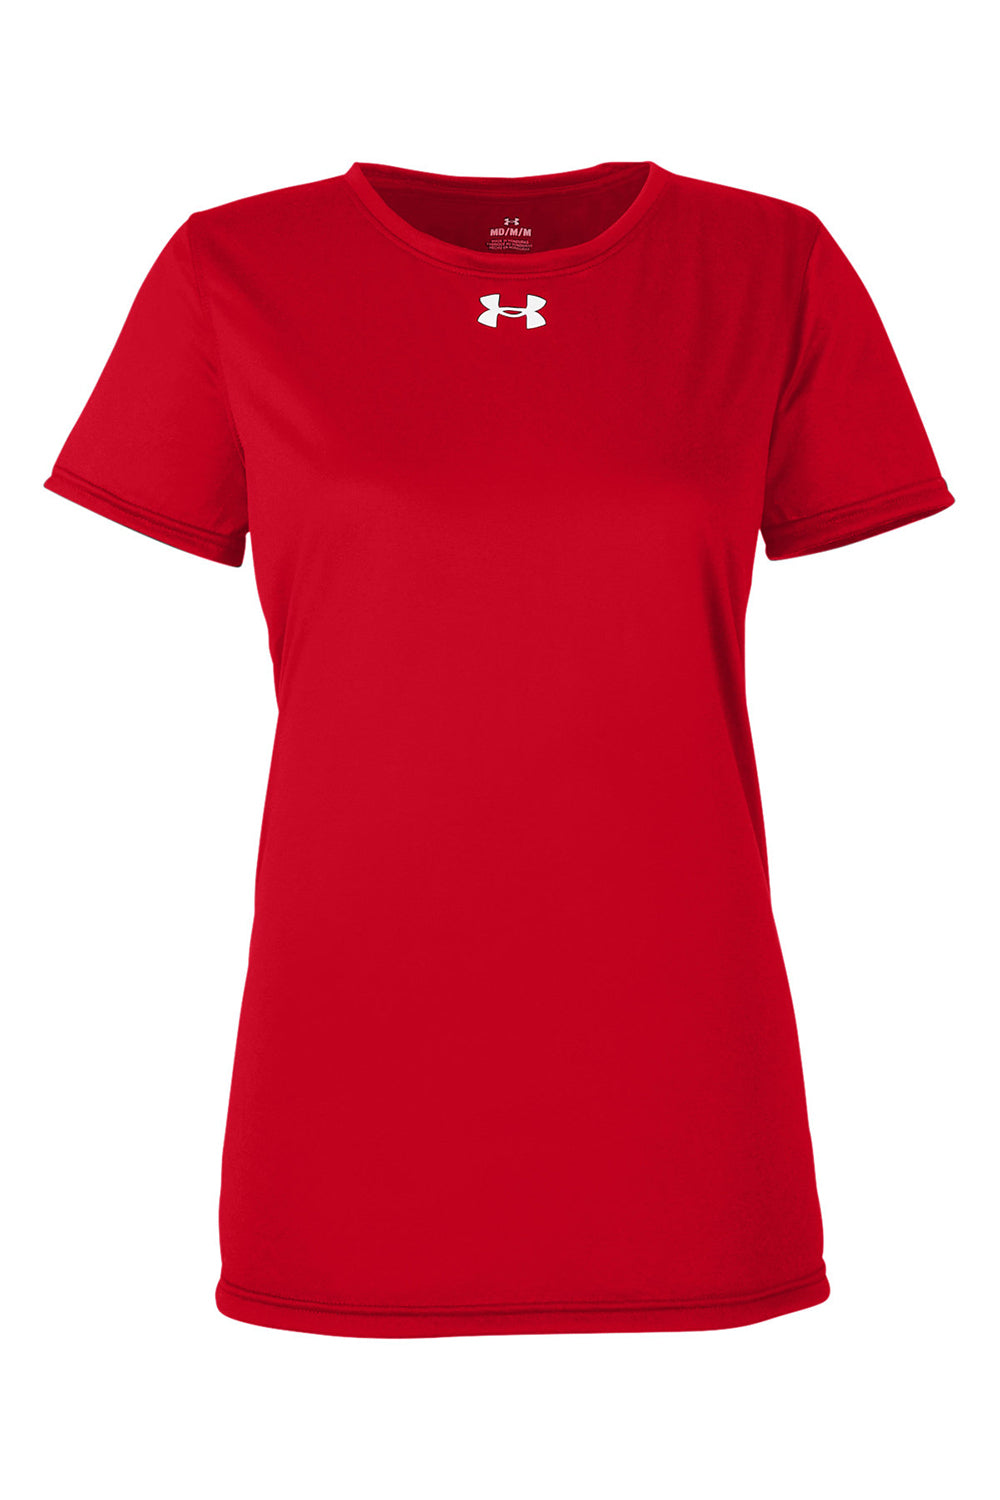 Under Armour 1376847 Womens Team Tech Moisture Wicking Short Sleeve Crewneck T-Shirt Red Flat Front